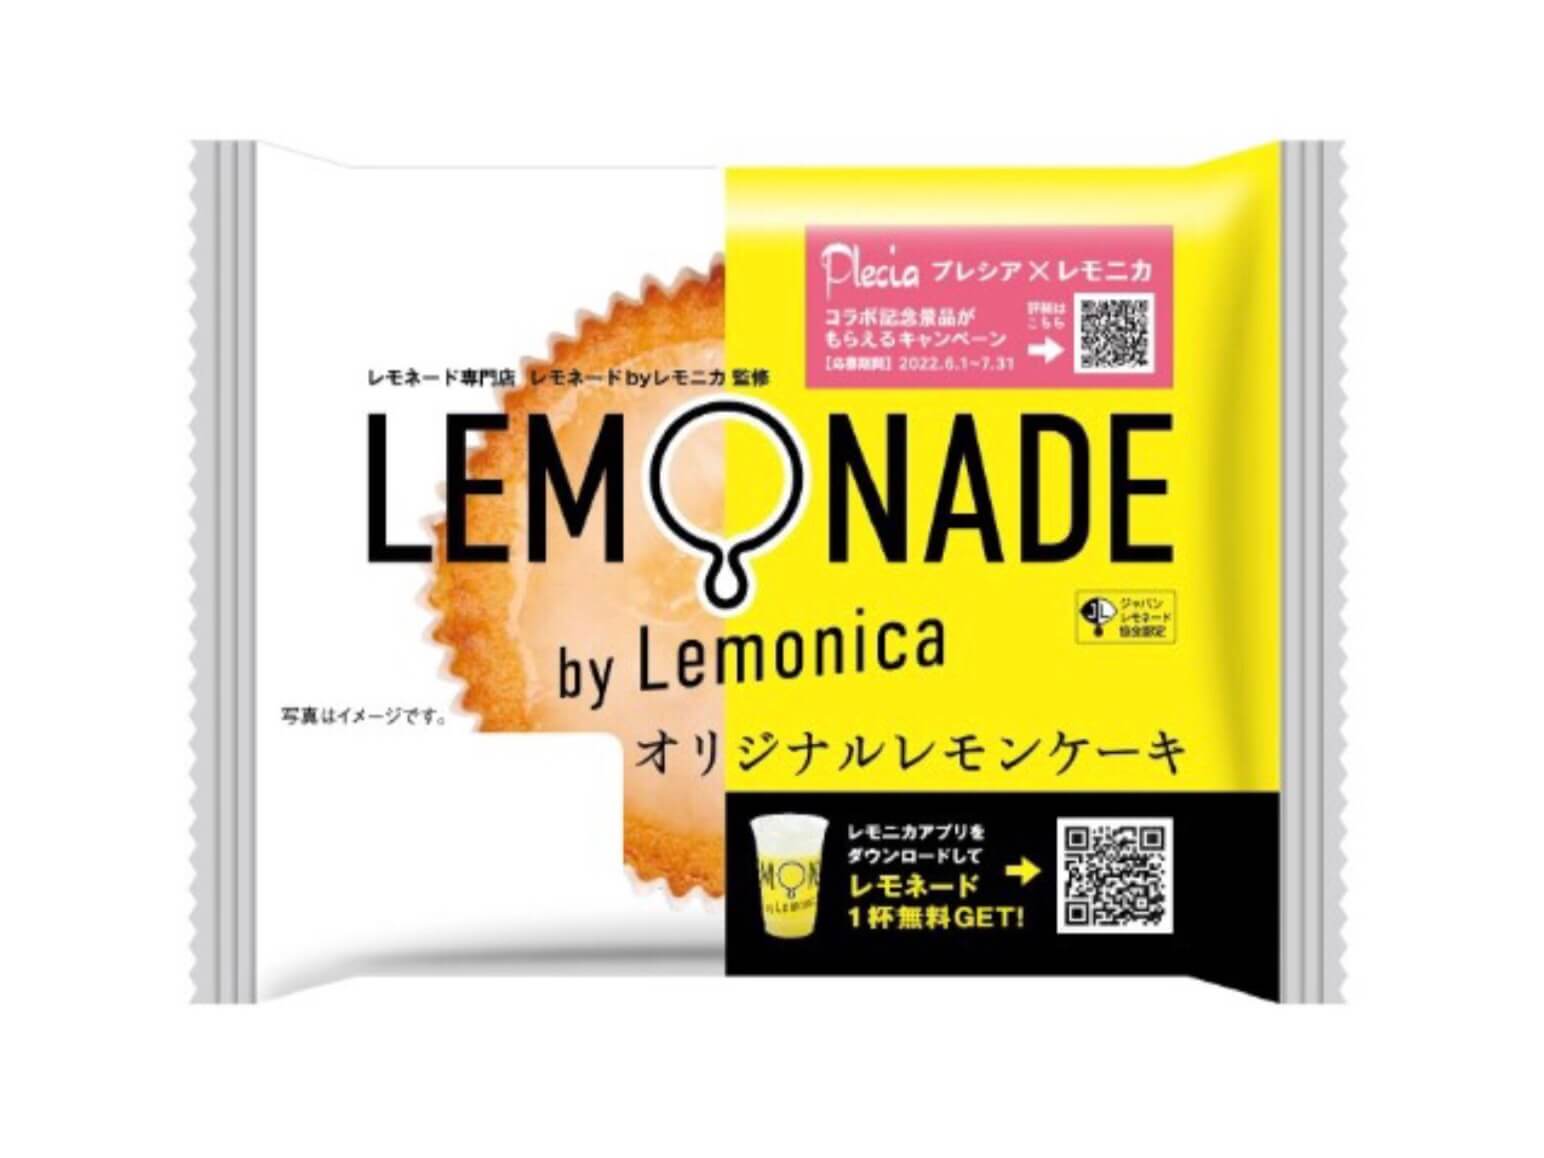 「LEMONADE by Lemonica(レモネード バイ レモニカ)」監修のコラボスイーツ-オリジナルレモンケーキ